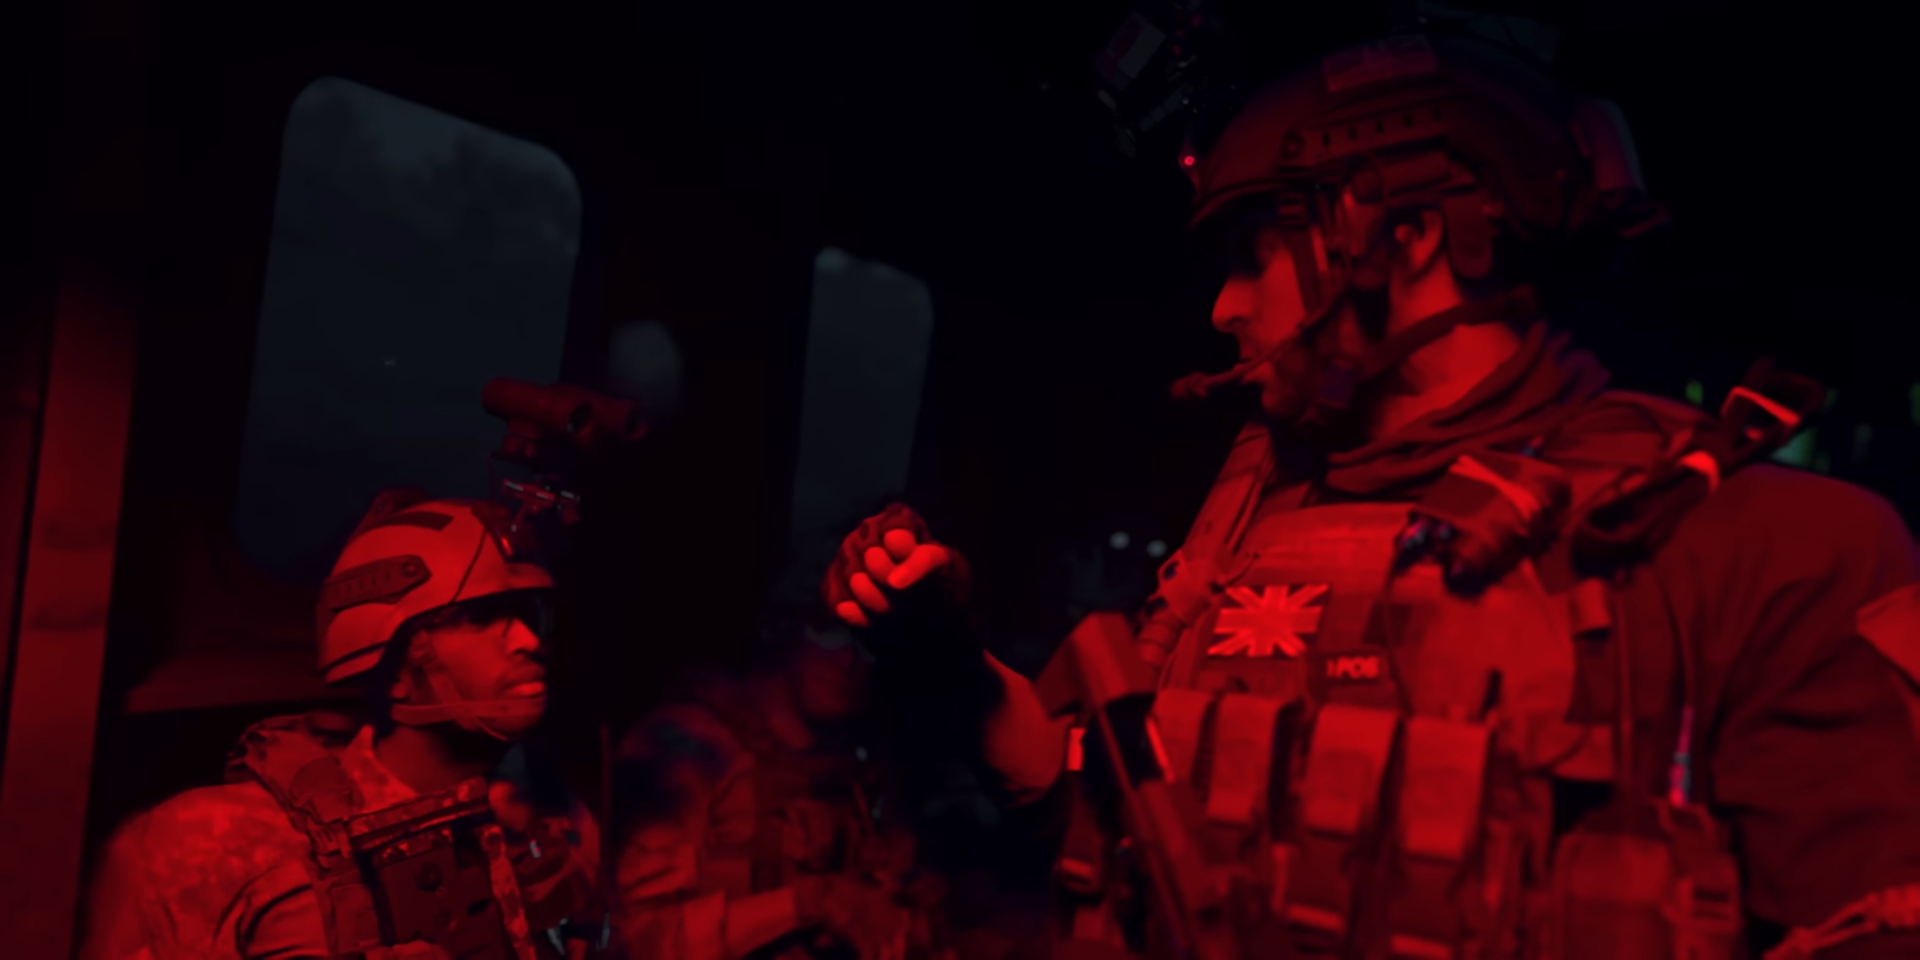 Modern Warfare 2 campaign is CoD: Dark Souls, “two shots, you're dead”